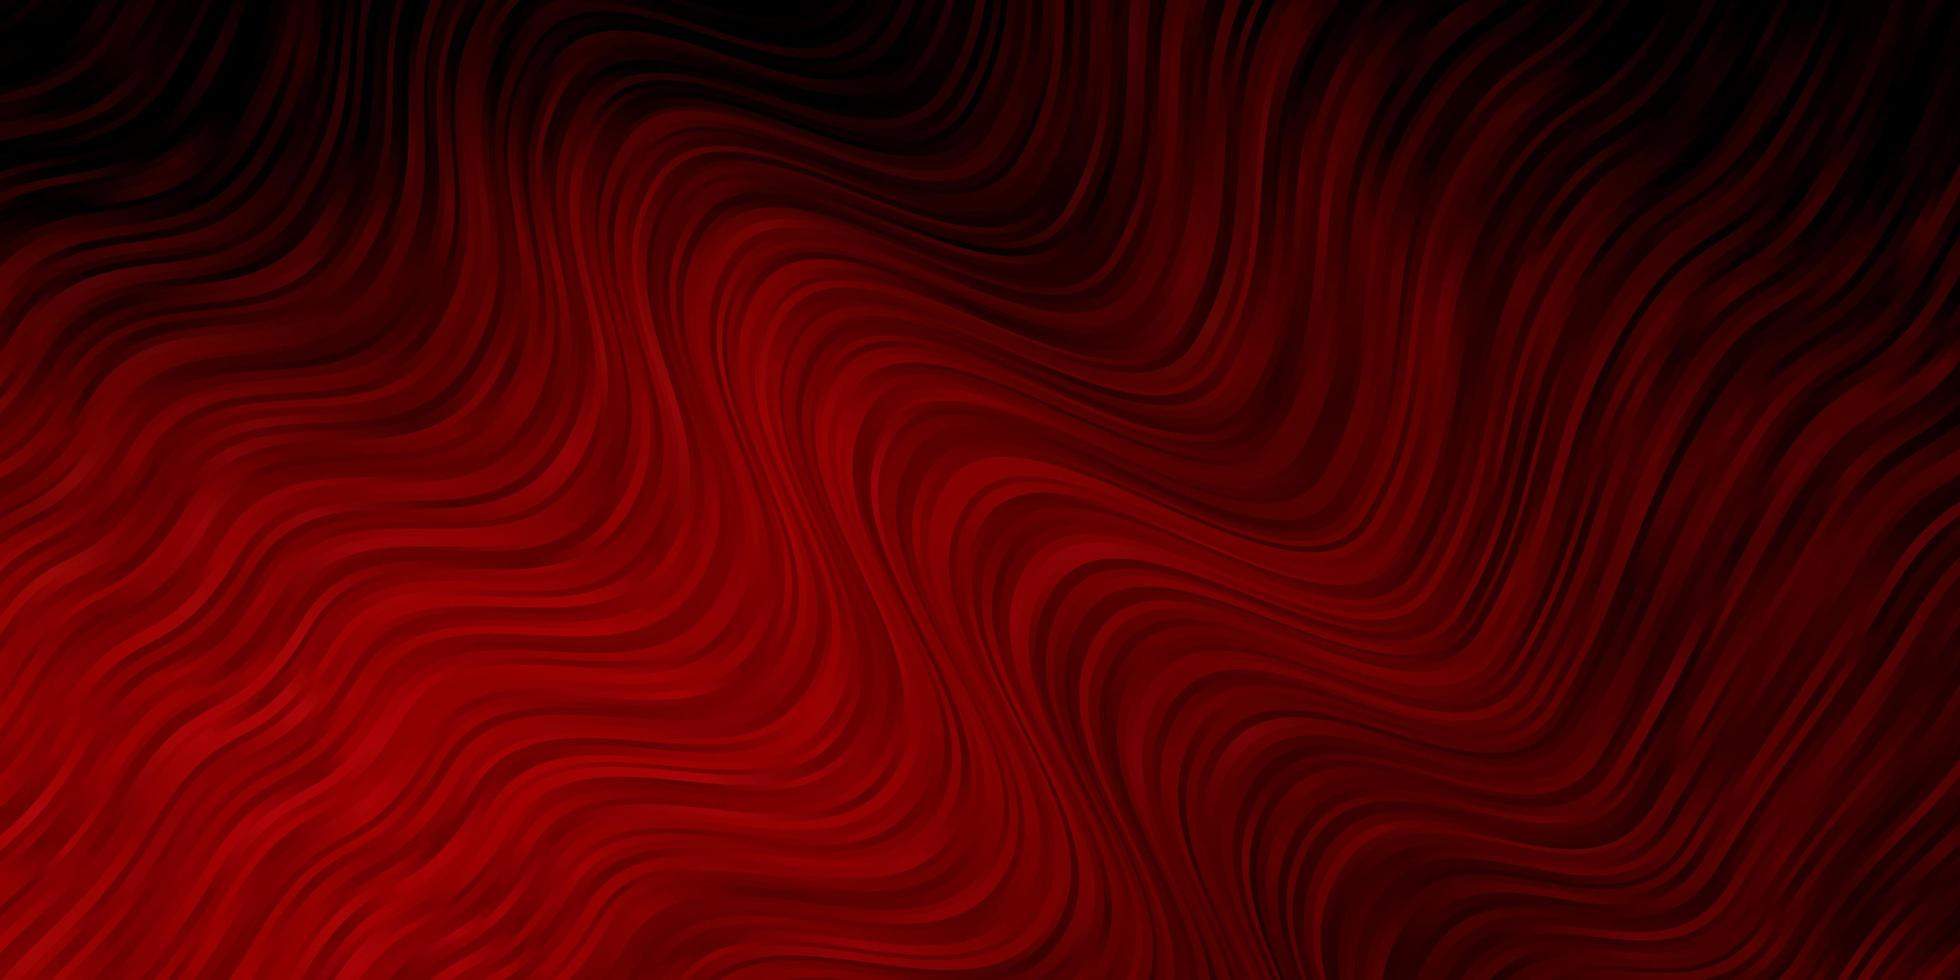 padrão de vetor vermelho escuro com ilustração de gradiente abstrato de curvas com padrão de linhas irônicas para folhetos de livretos de negócios